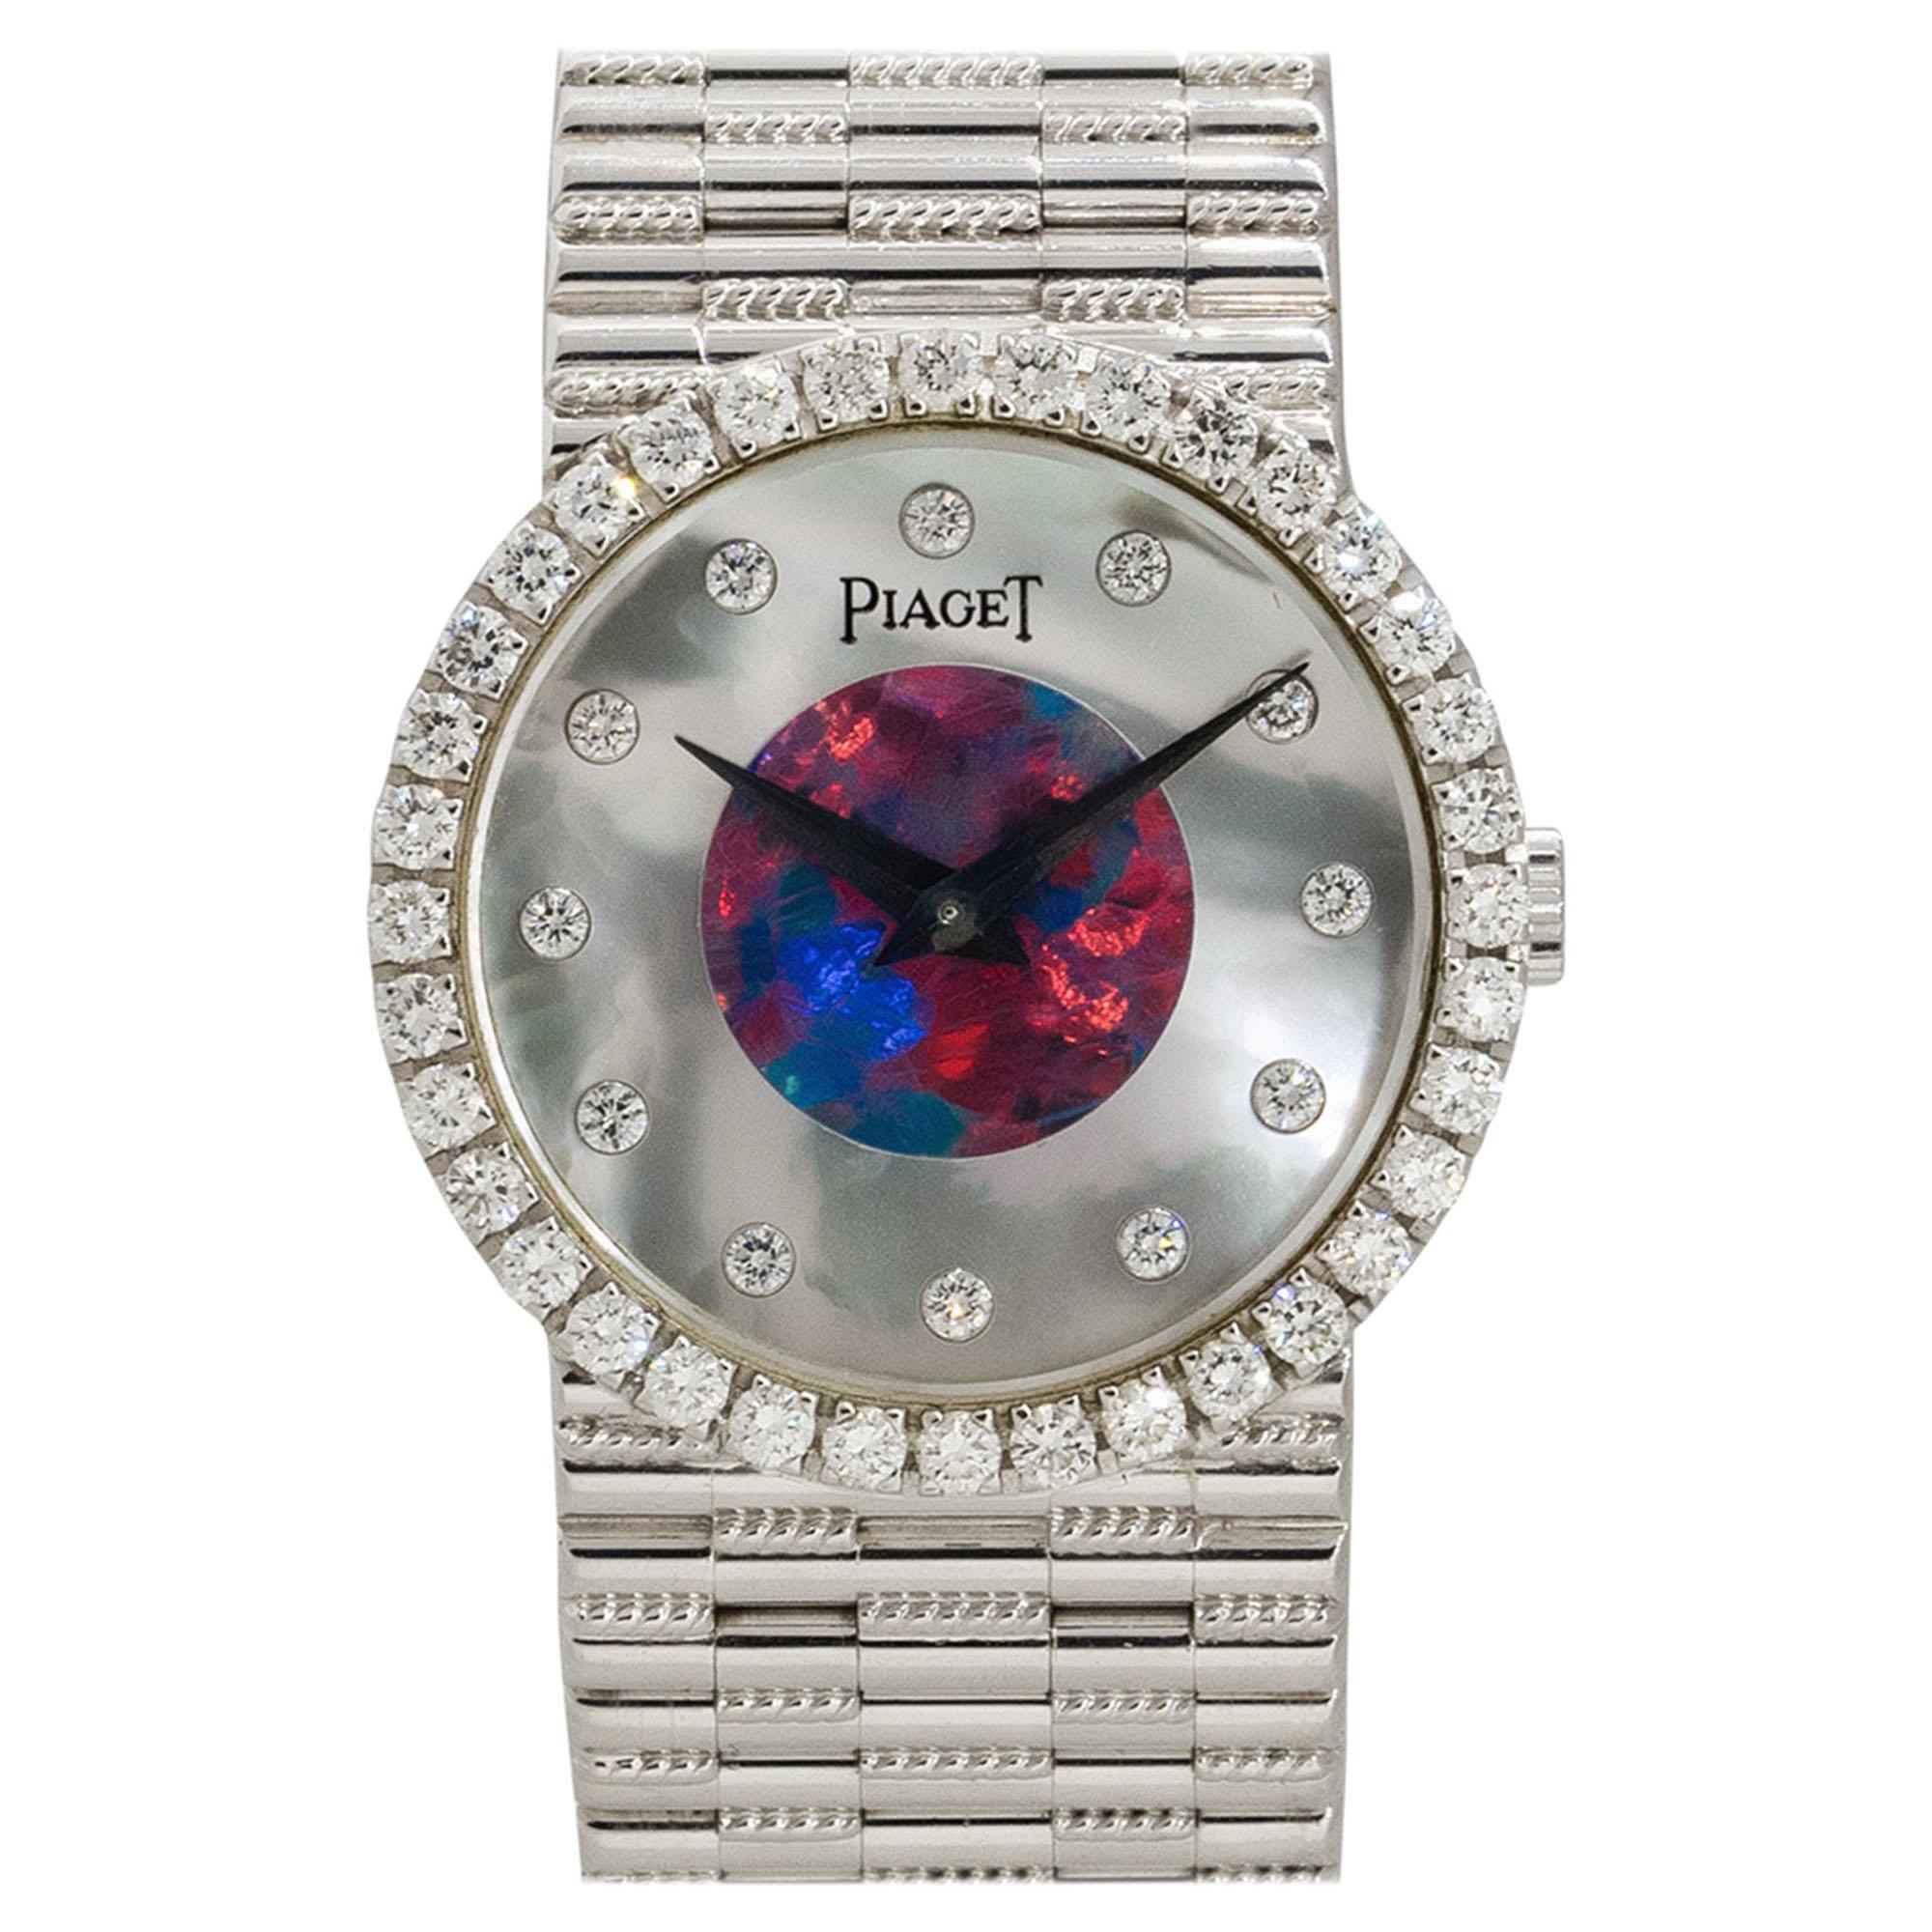 Piaget Montre pour femme 9706G2 en or blanc 18 carats avec opale et nacre